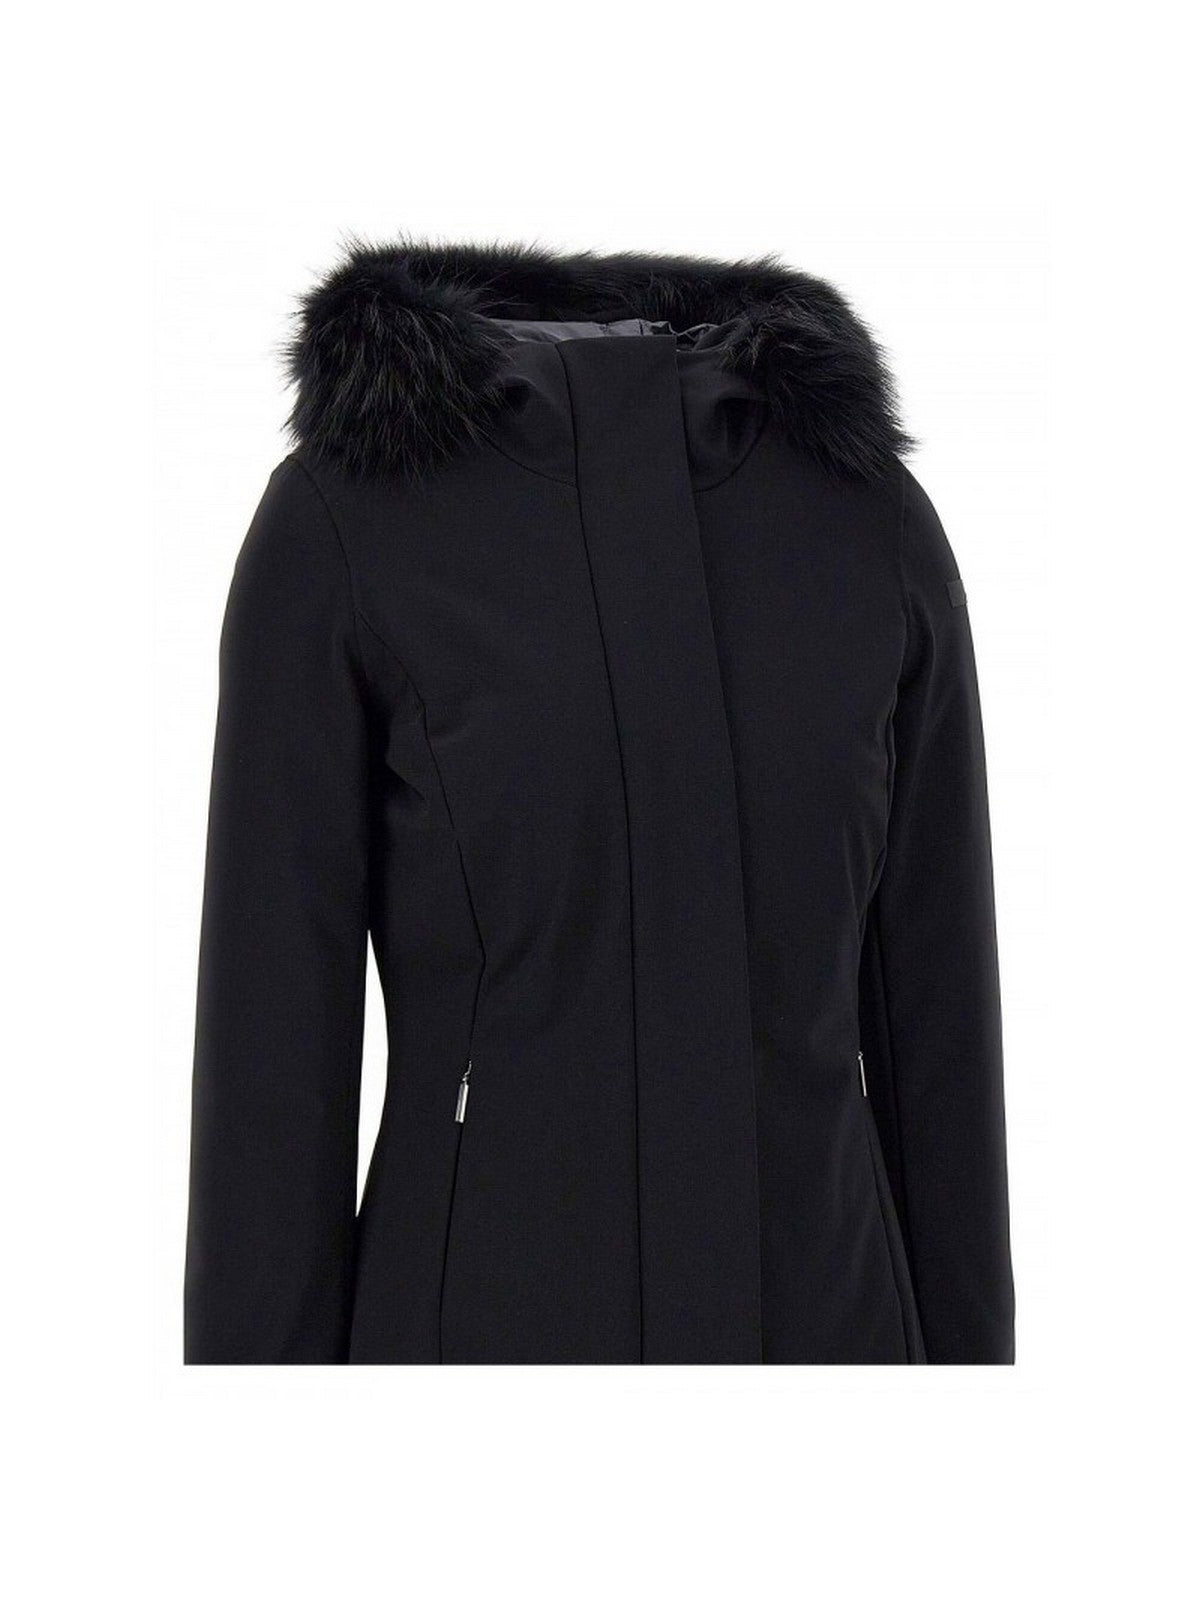 RRD Women's Jacket W23502FT 10 Black